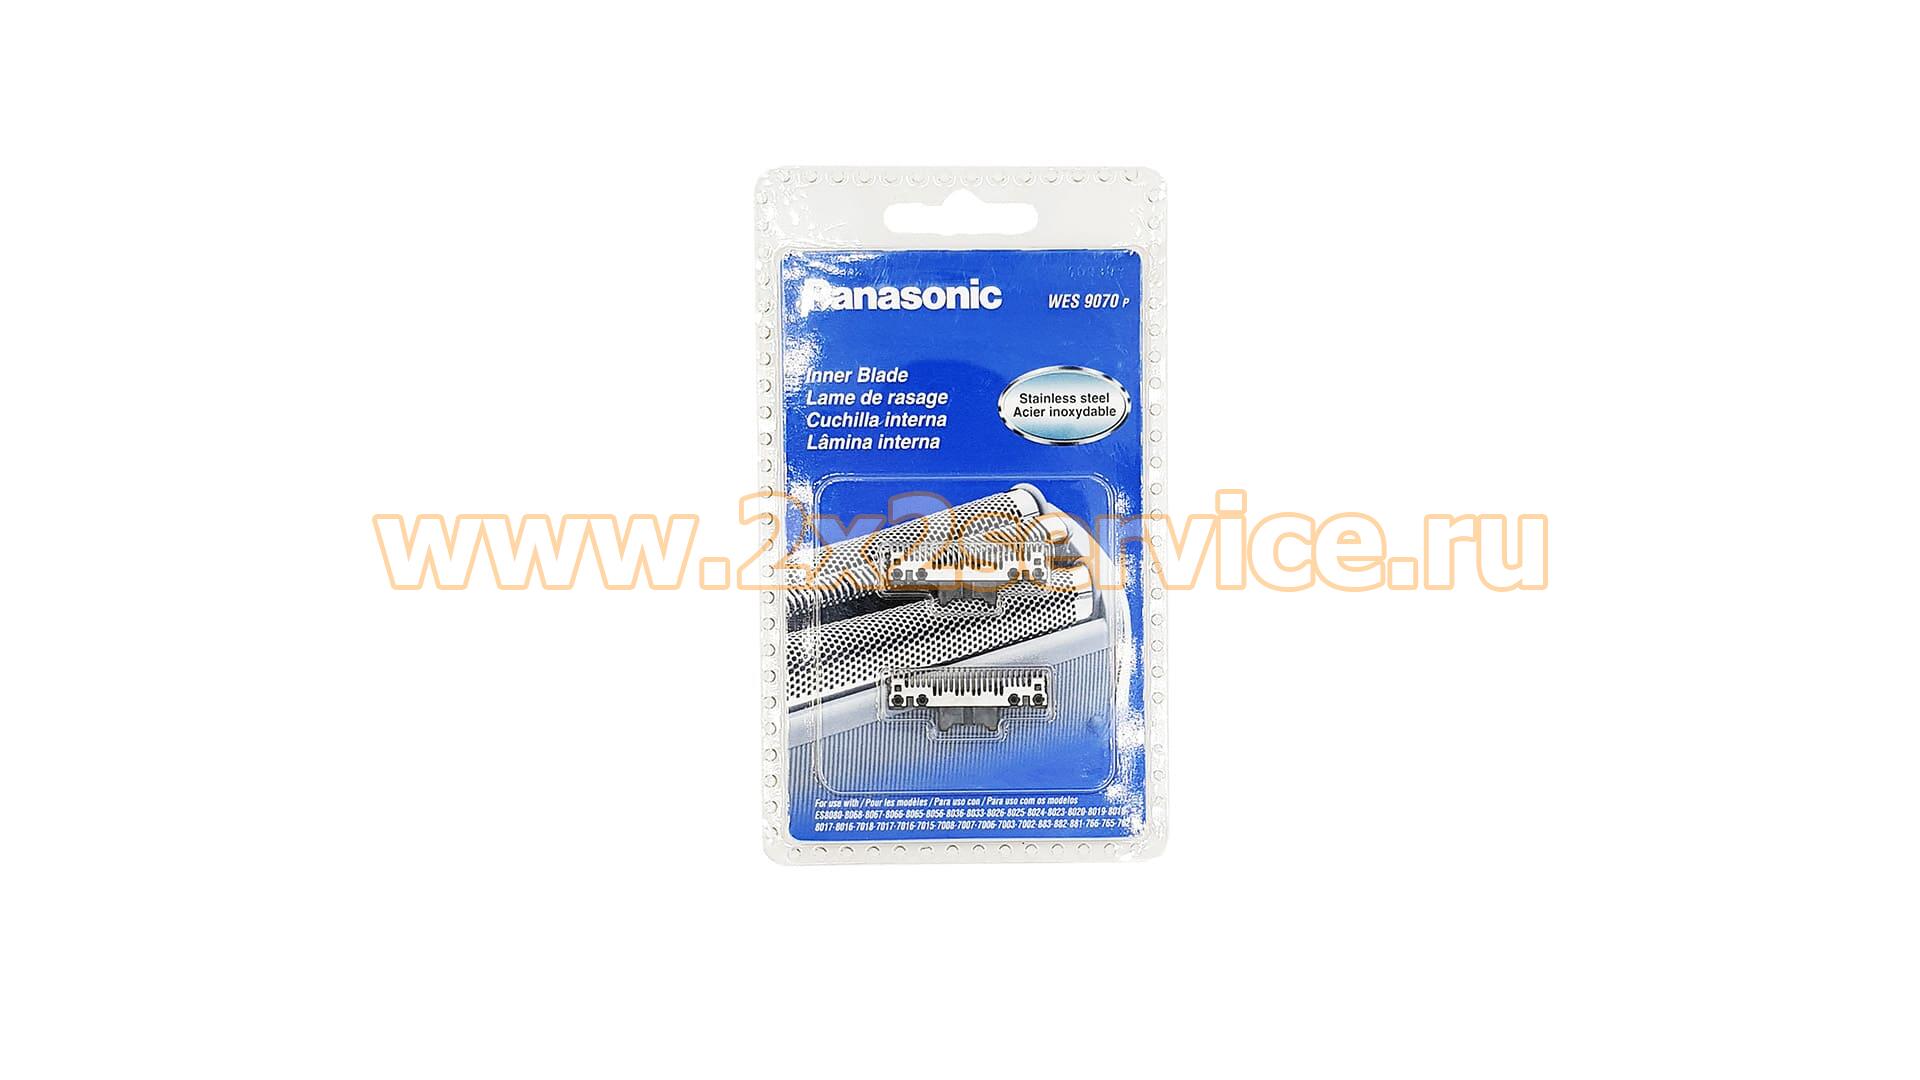 Комплект ножей электробритвы Panasonic (WES 9070 P)